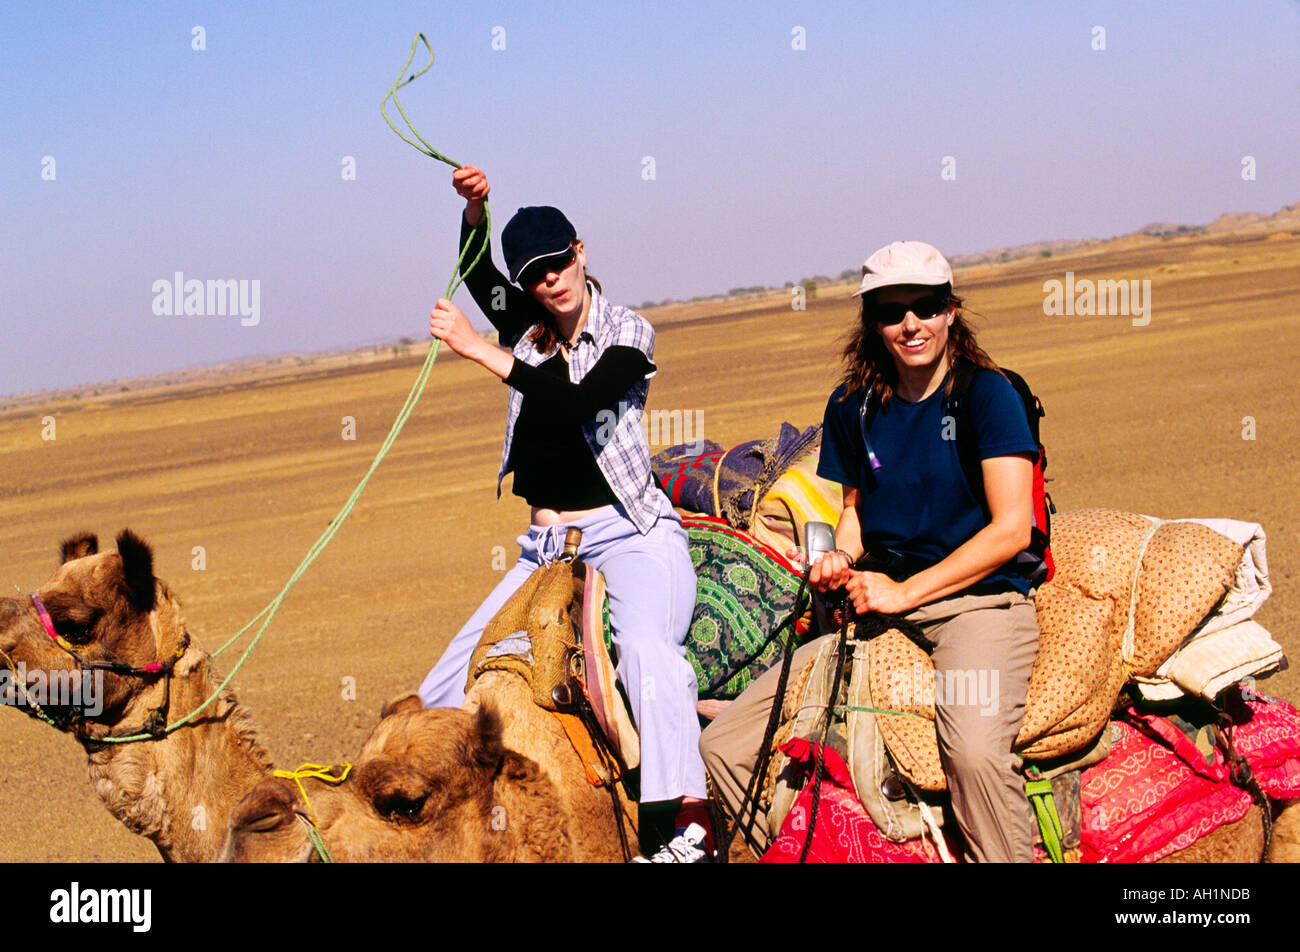 Gruppe von weißen kaukasischen Menschen Touristen auf Kamelsafari Spaß in der Wüste im freien Indien Asien Stockfoto